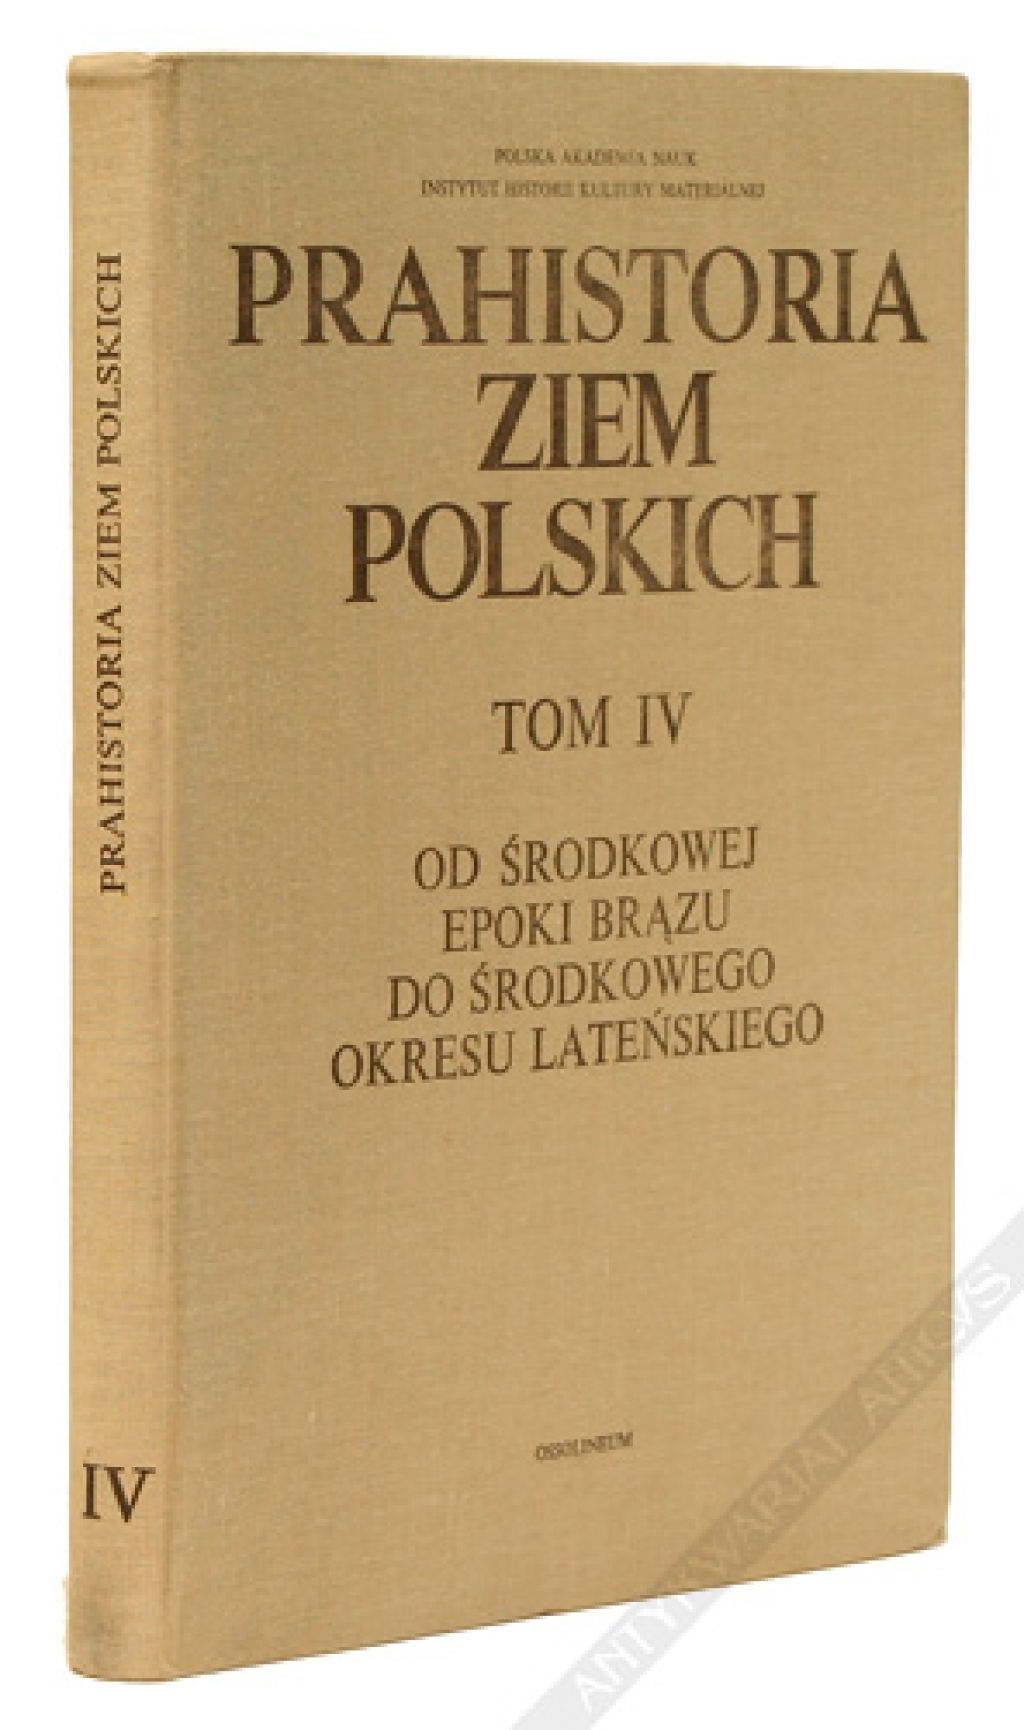 Prahistoria ziem polskich, t. IV. Od środkowej epoki brązu do środkowego okresu lateńskiego